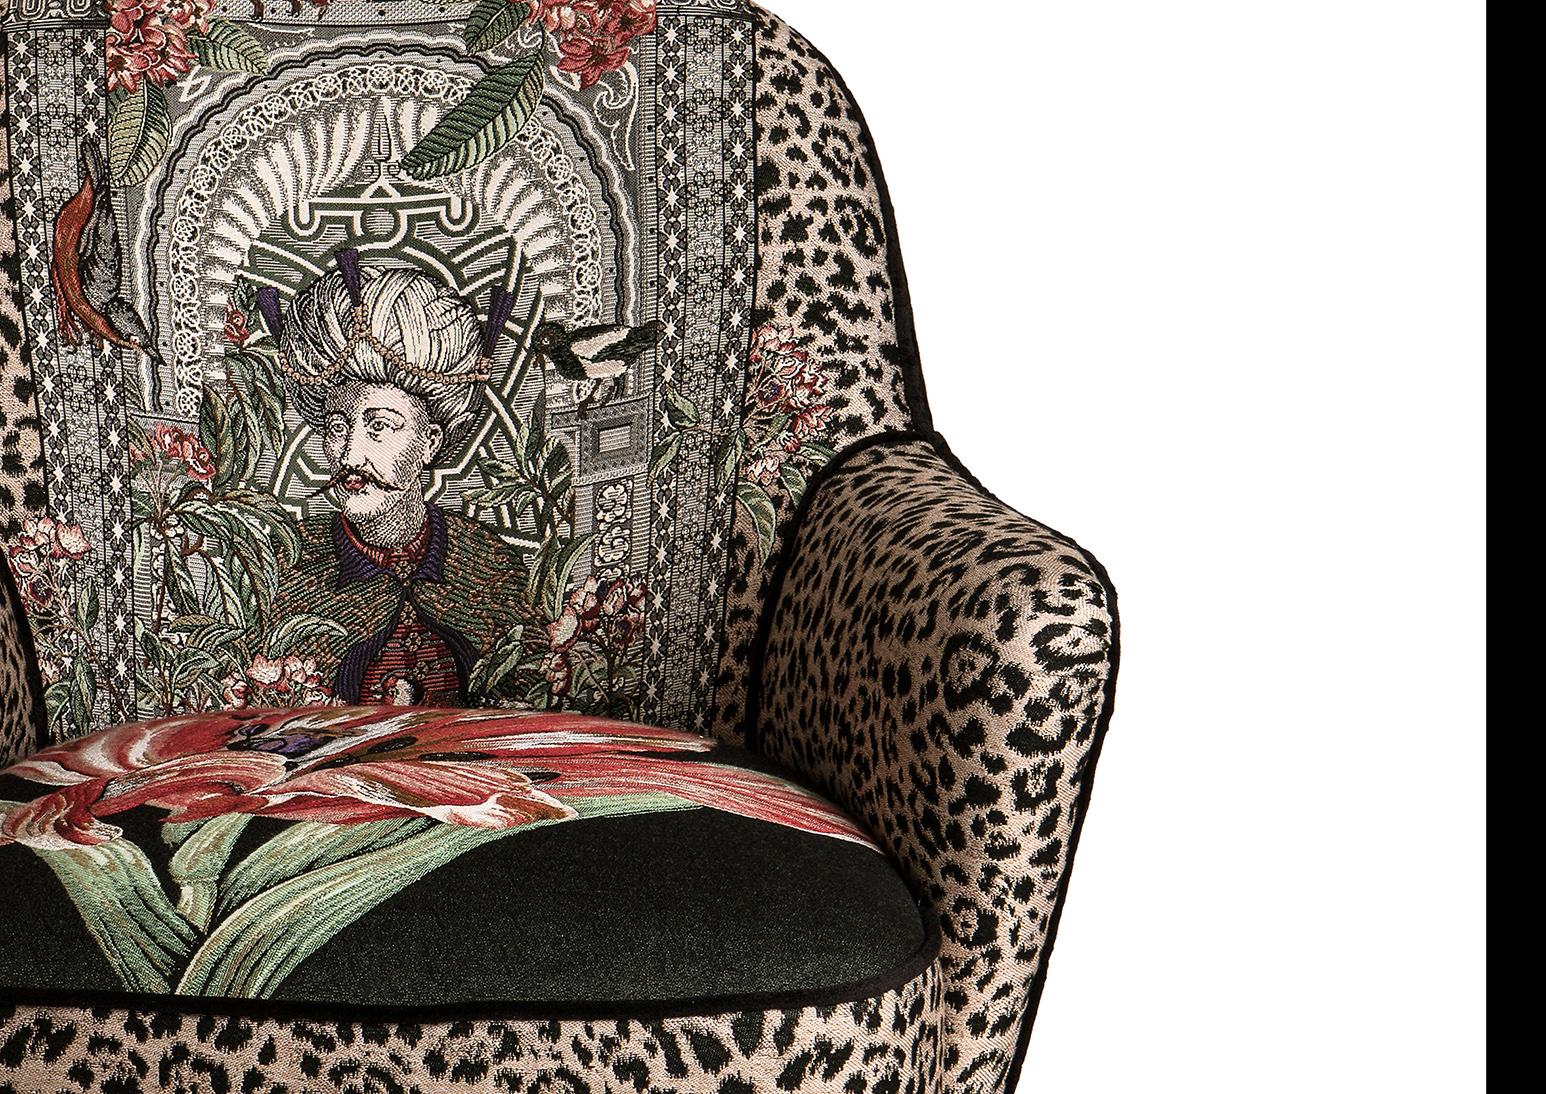 Eleganter italienischer Sessel im Mid Century Stil  mit Beinen und Ottomane aus Messing und Stoff mit botanischem Thema und Rückenlehne aus schwarzem Samt. Die Ottoman-Kollektion wurde von Massimiliano Giornetti, dem langjährigen Kreativdirektor von